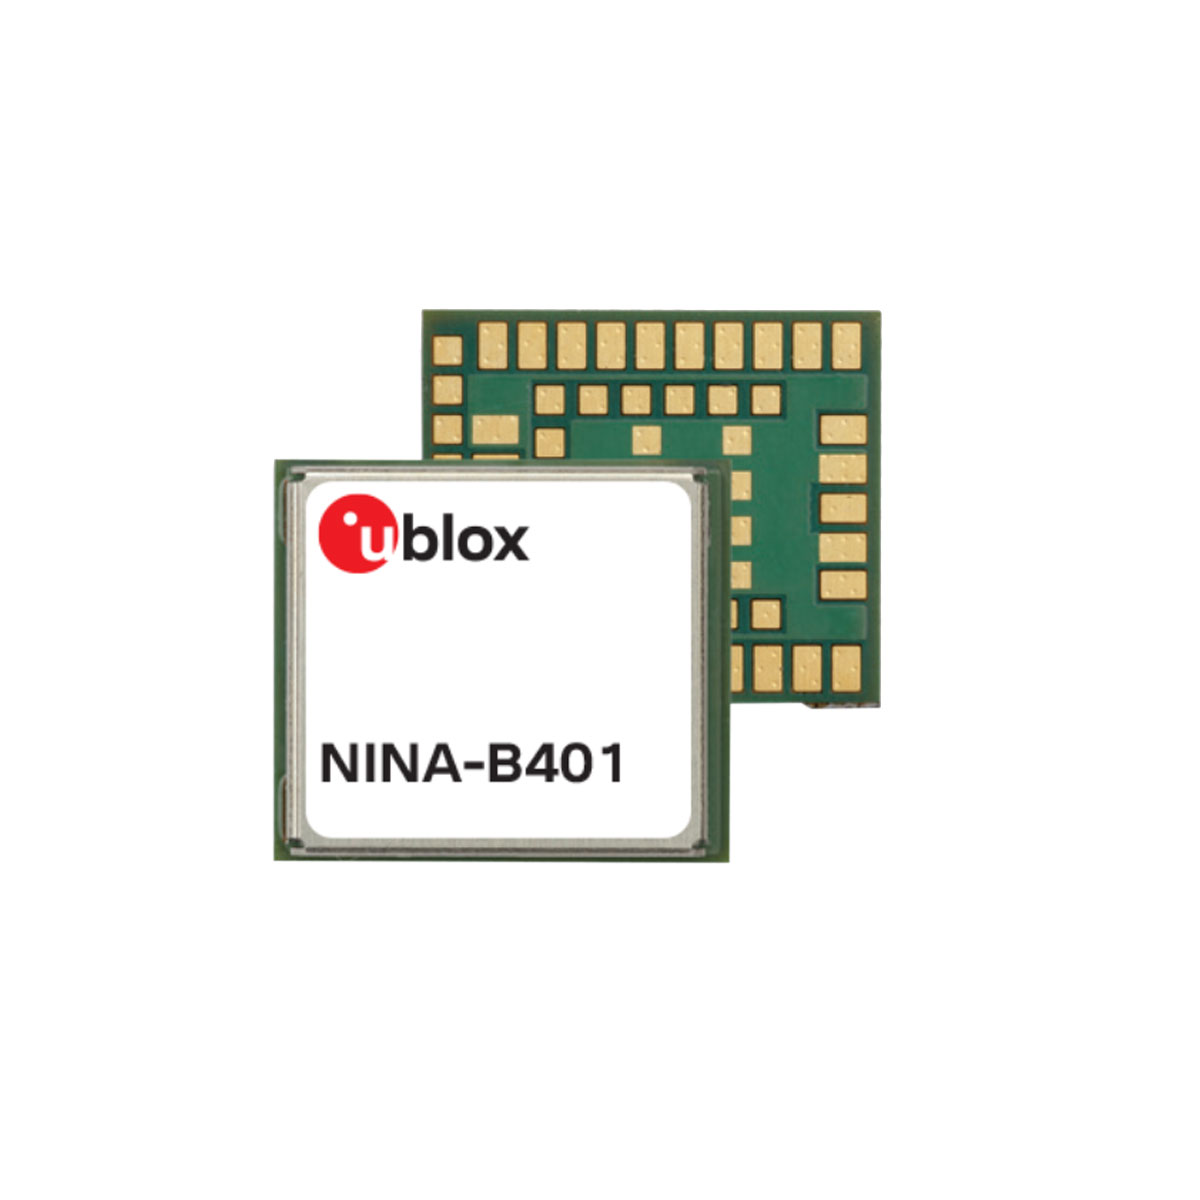 NINA-B401-00B